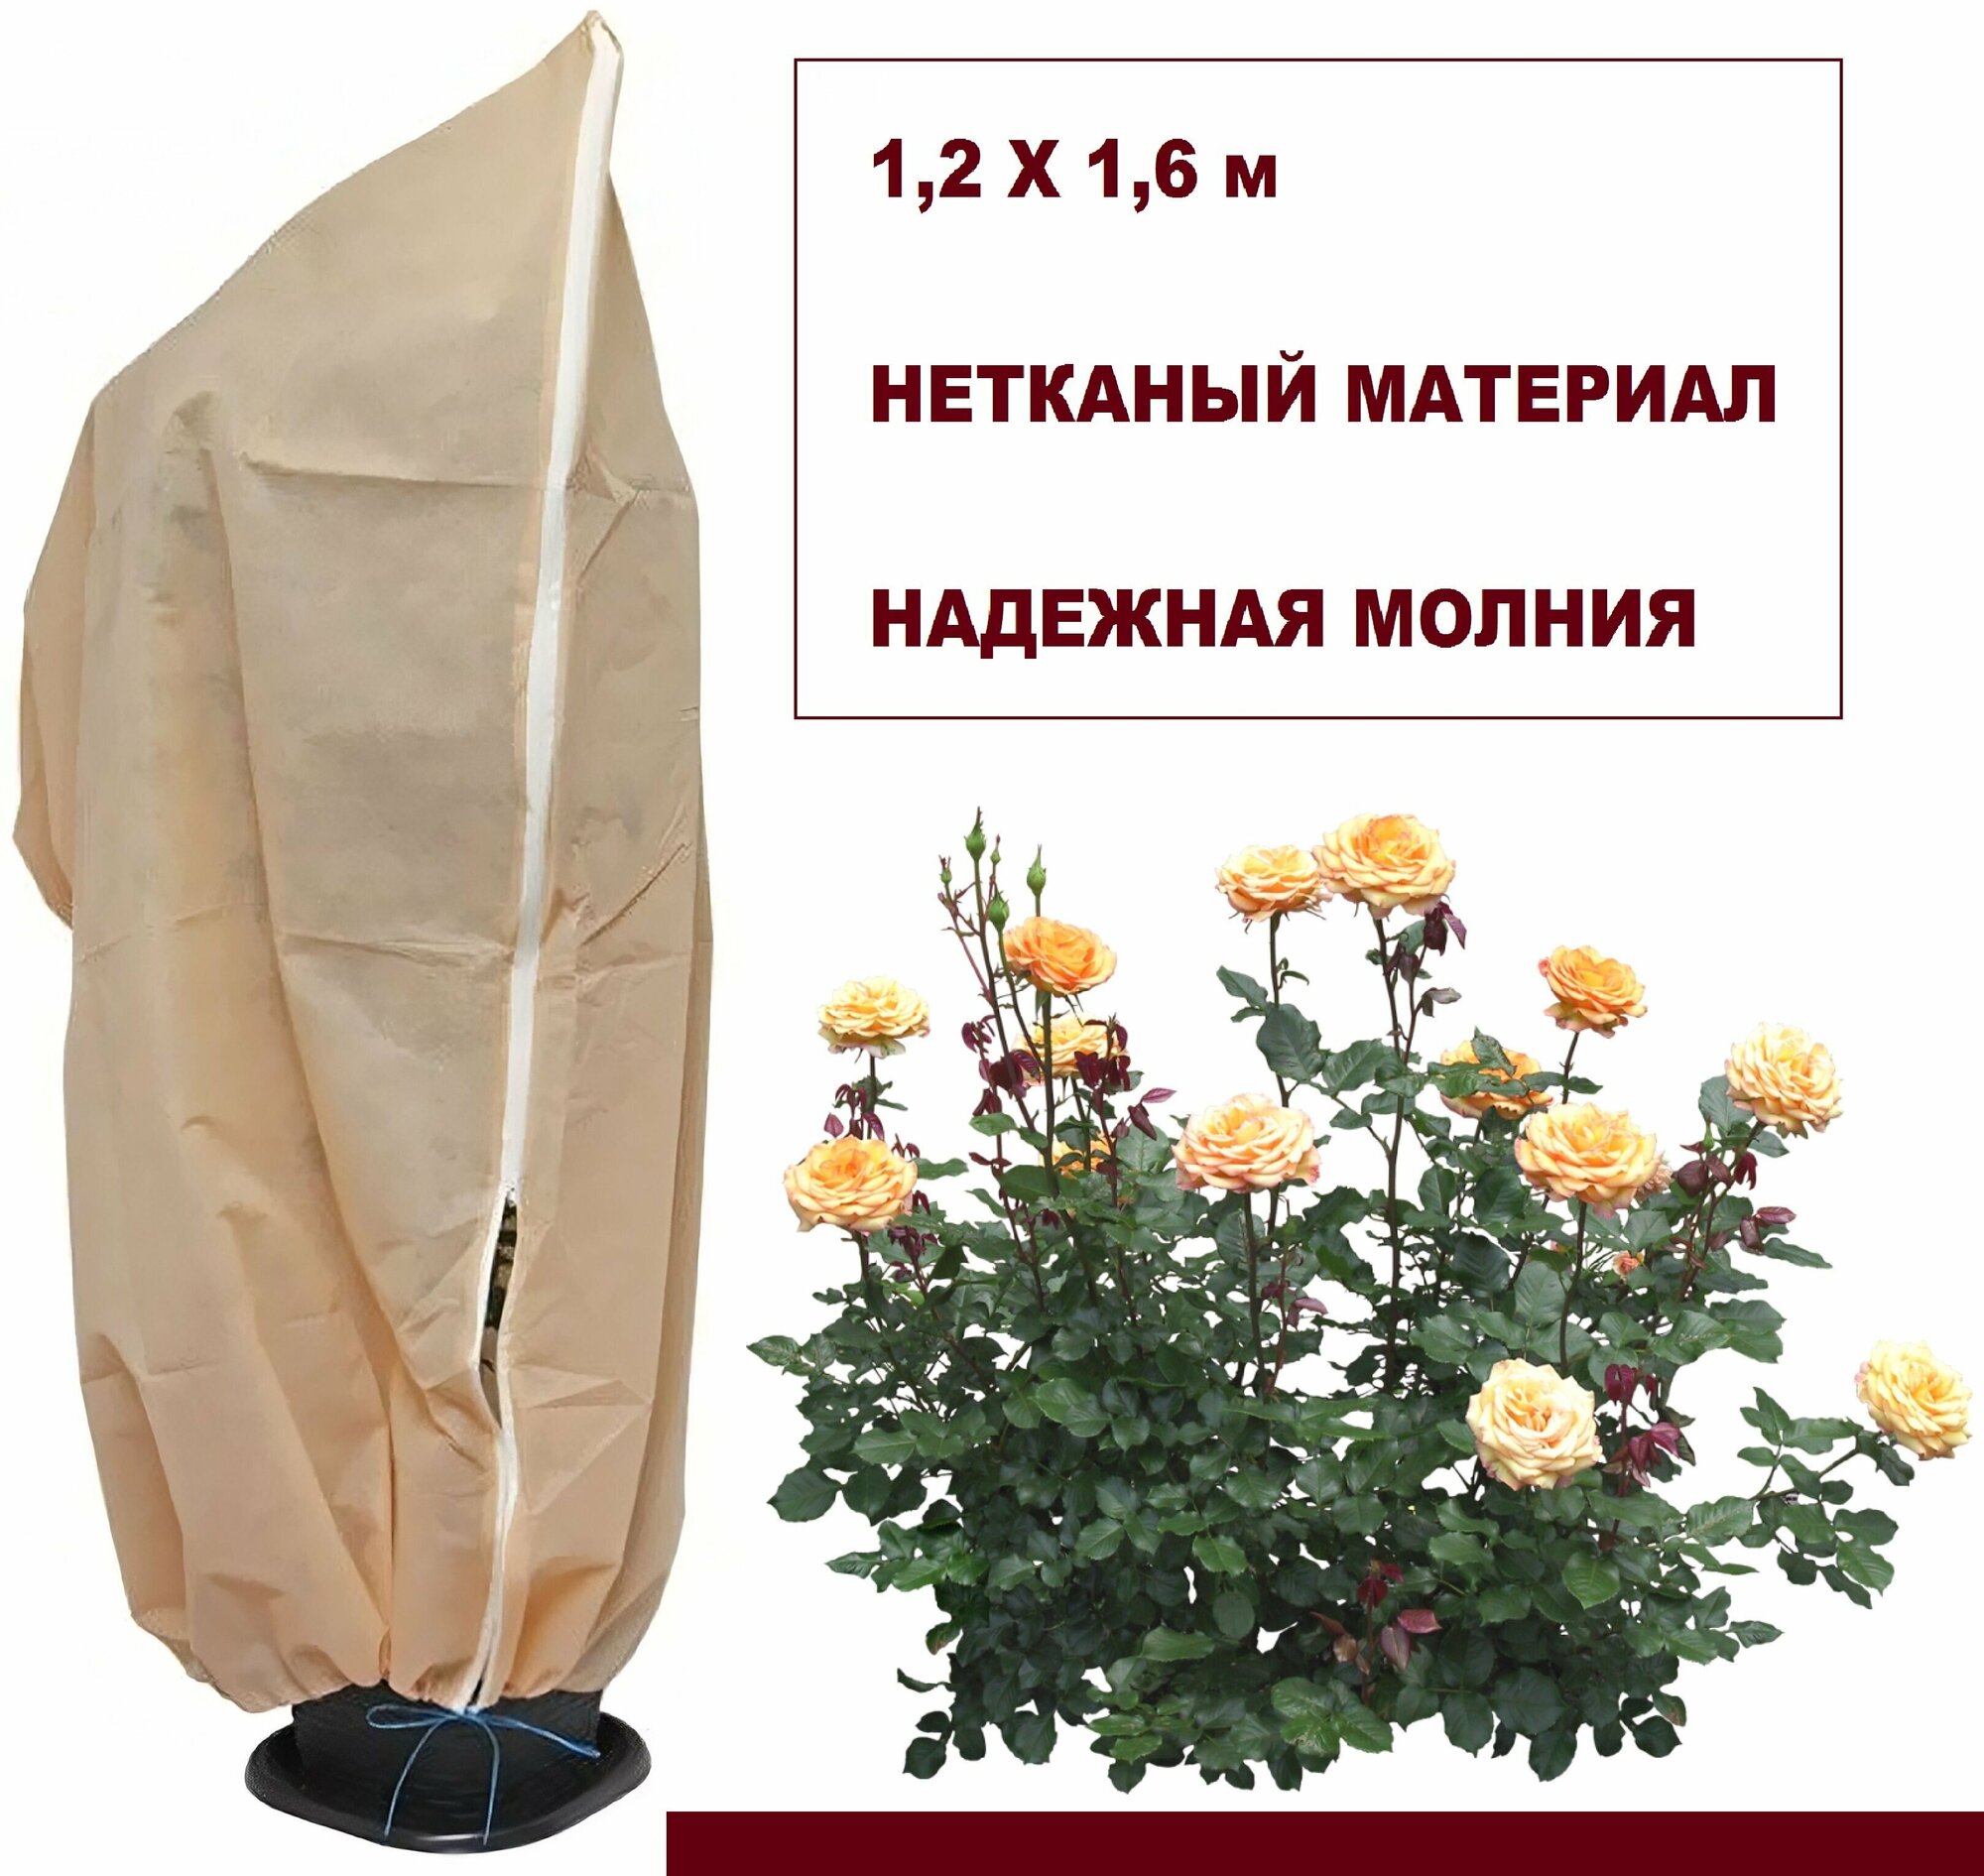 Чехол для кустарников и роз прямоугольный на молнии 1.2х1.6 м. Для защиты растений от ветра, дождя, морозов, жары и грызунов